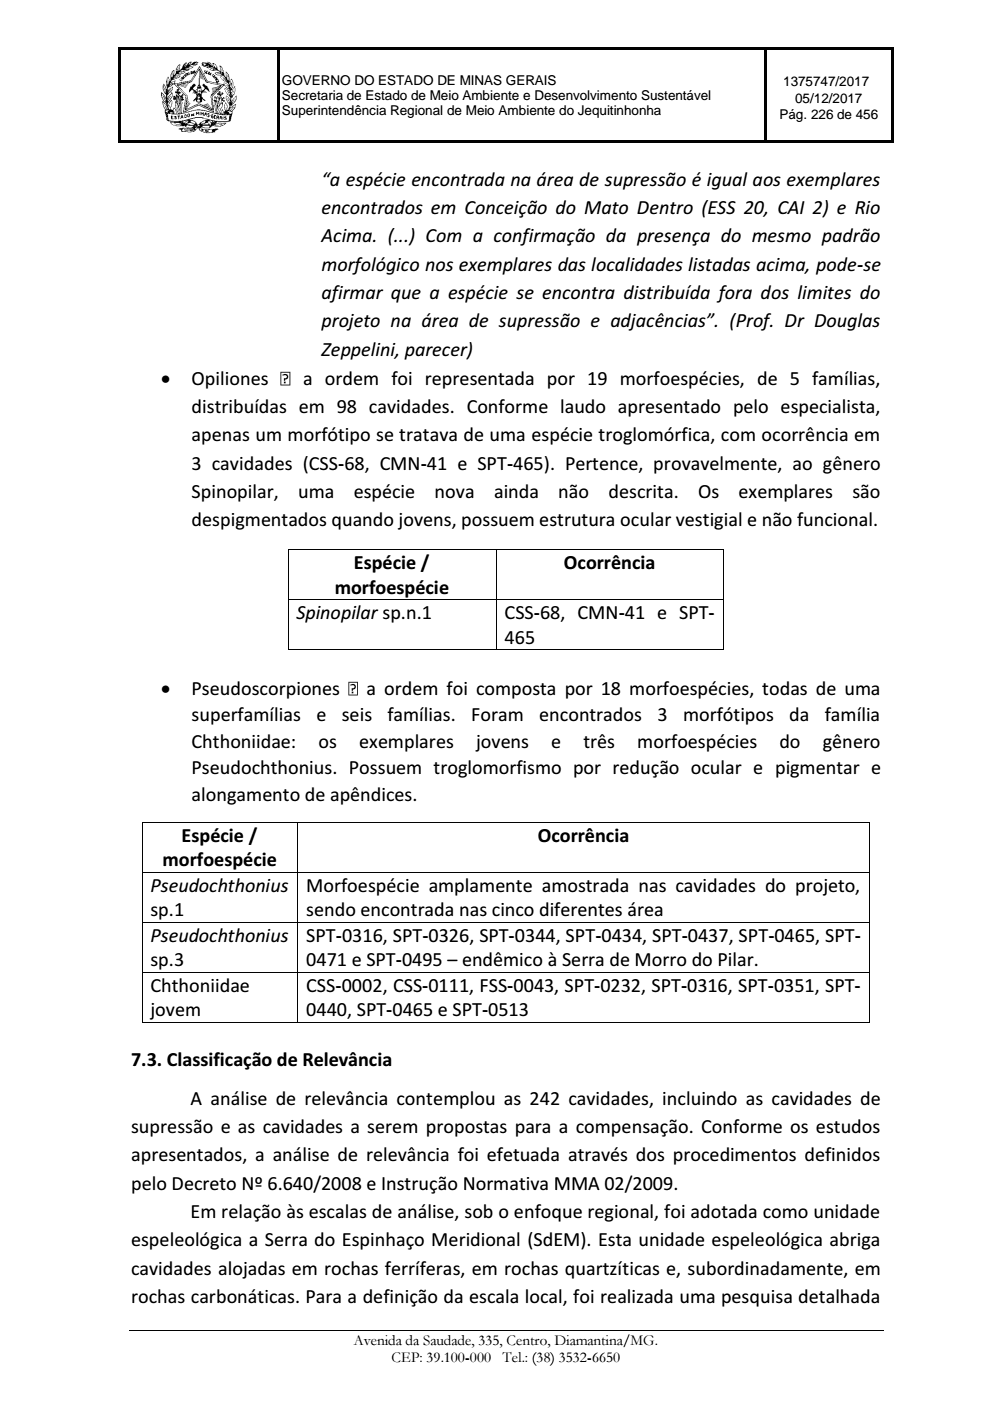 Page 226 from Parecer único da Secretaria de estado de Meio Ambiente e Desenvolvimento Sustentável (SEMAD)